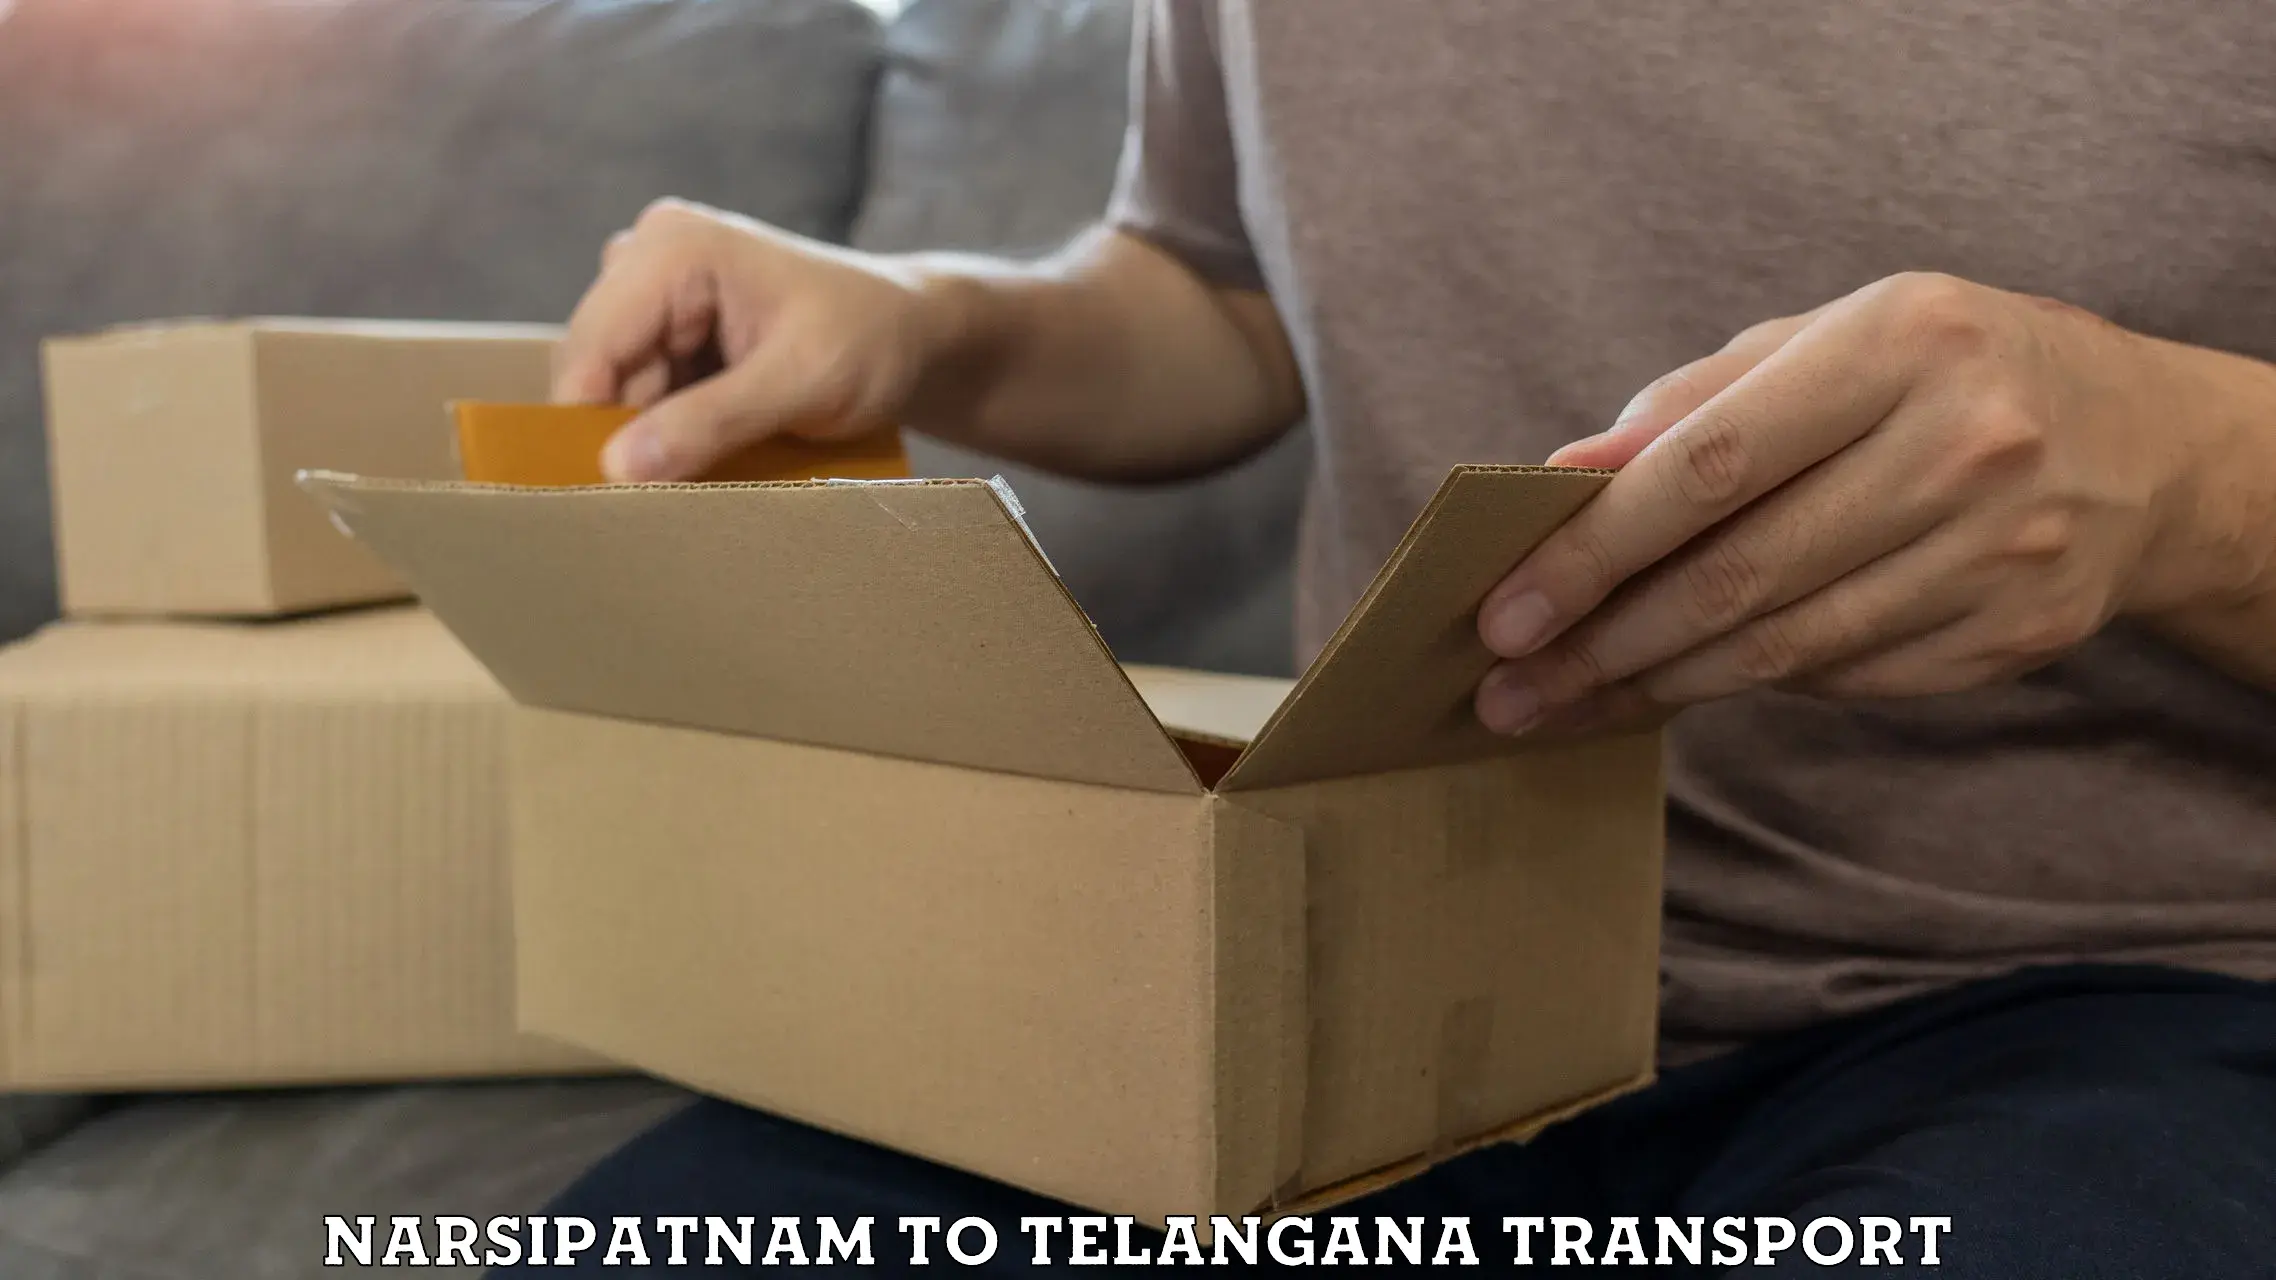 Shipping partner Narsipatnam to Vemulawada